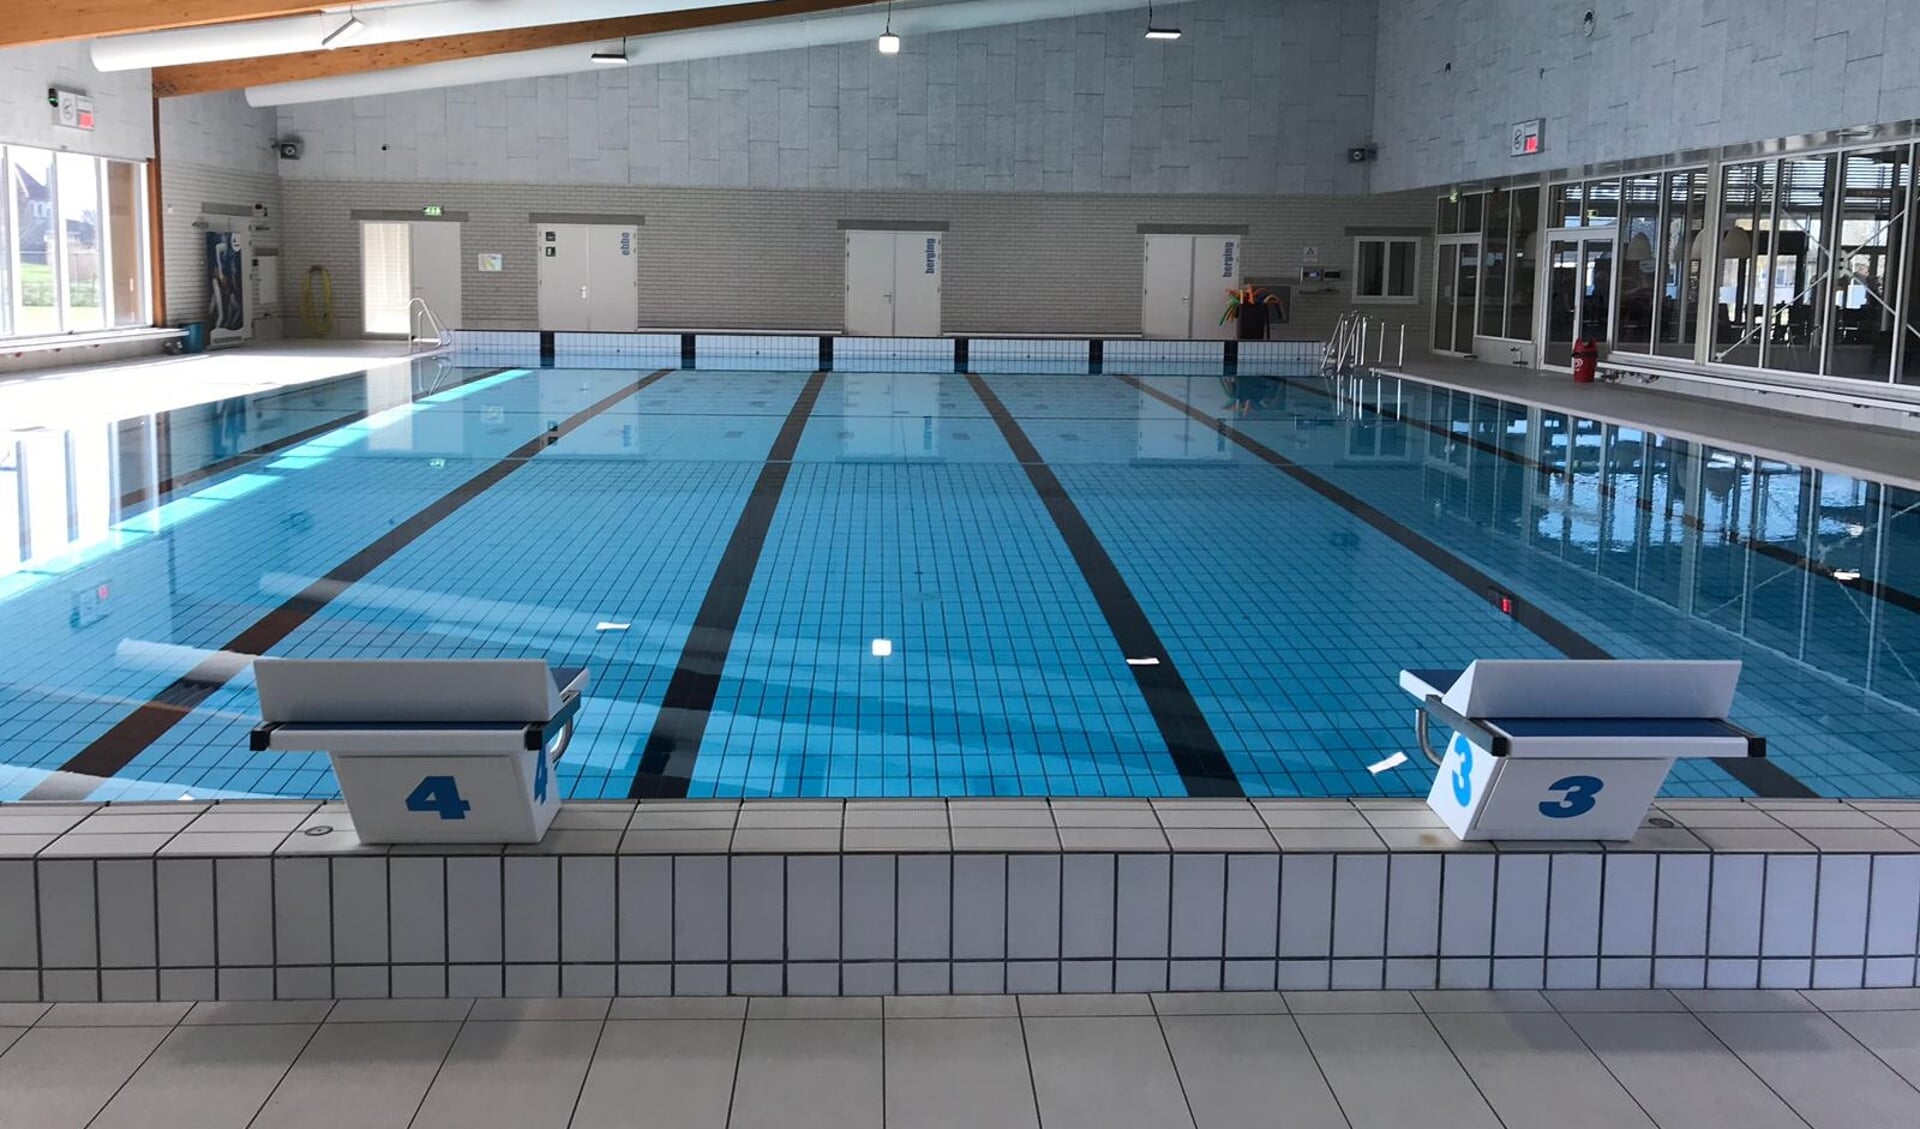 Het bad van AquaAltena is nu nog leeg, maar verwacht deze week weer zwemmers.